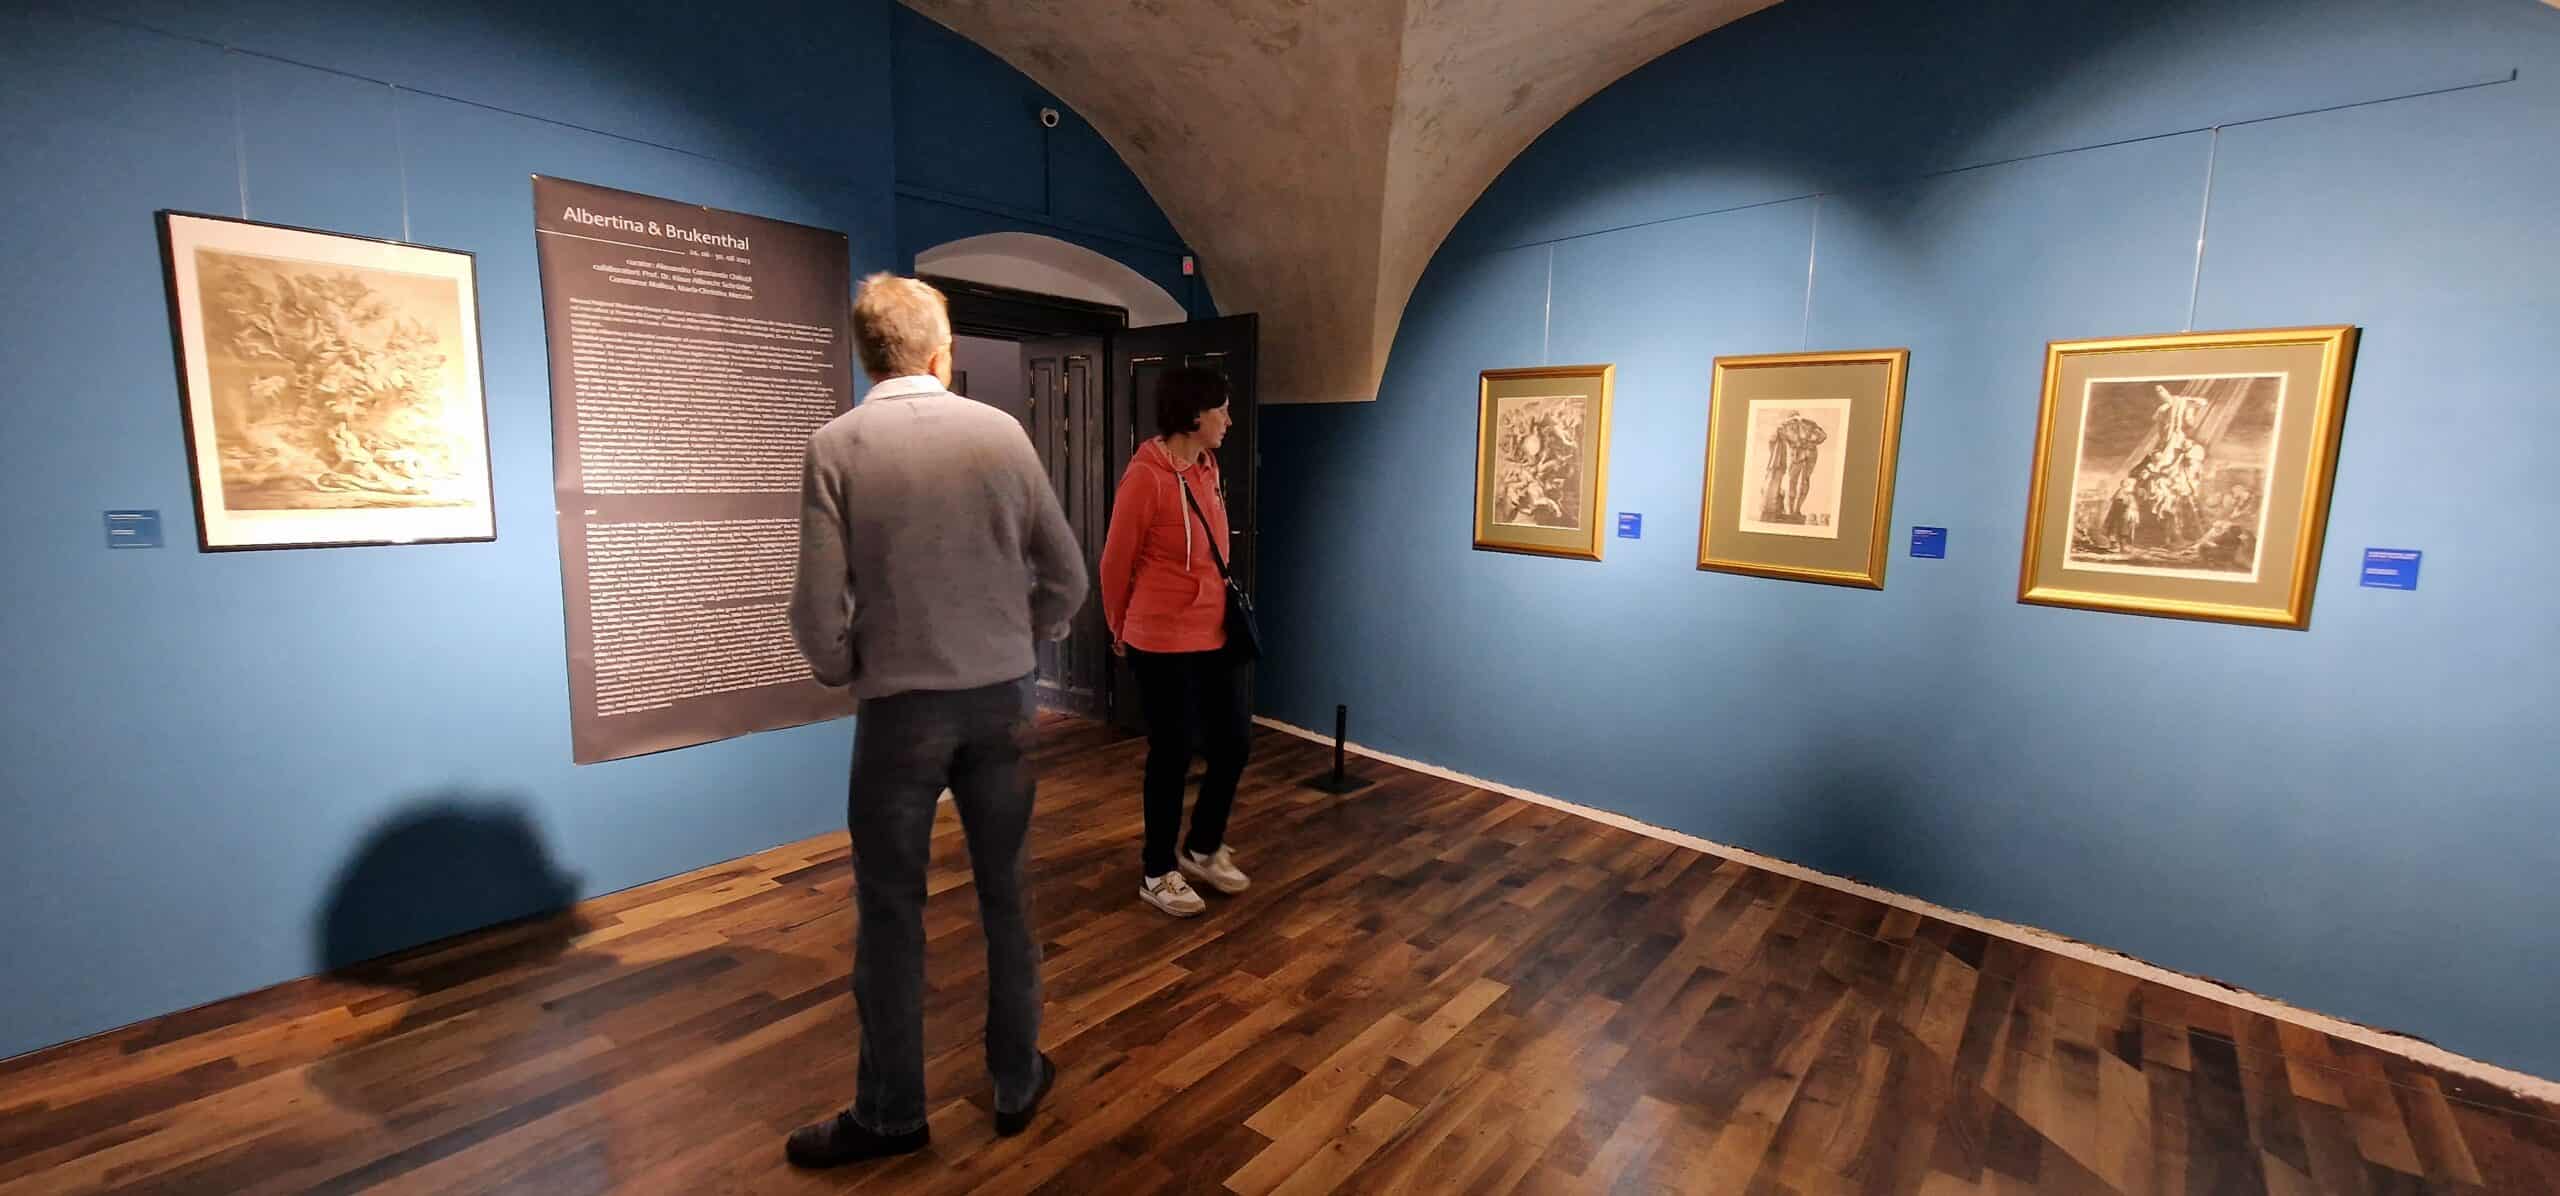 ghidul sibianului curios: tablouri expuse in premieră la muzeul brukenthal. lucrări de michelangelo şi leonardo da vinci printre ele (video foto)